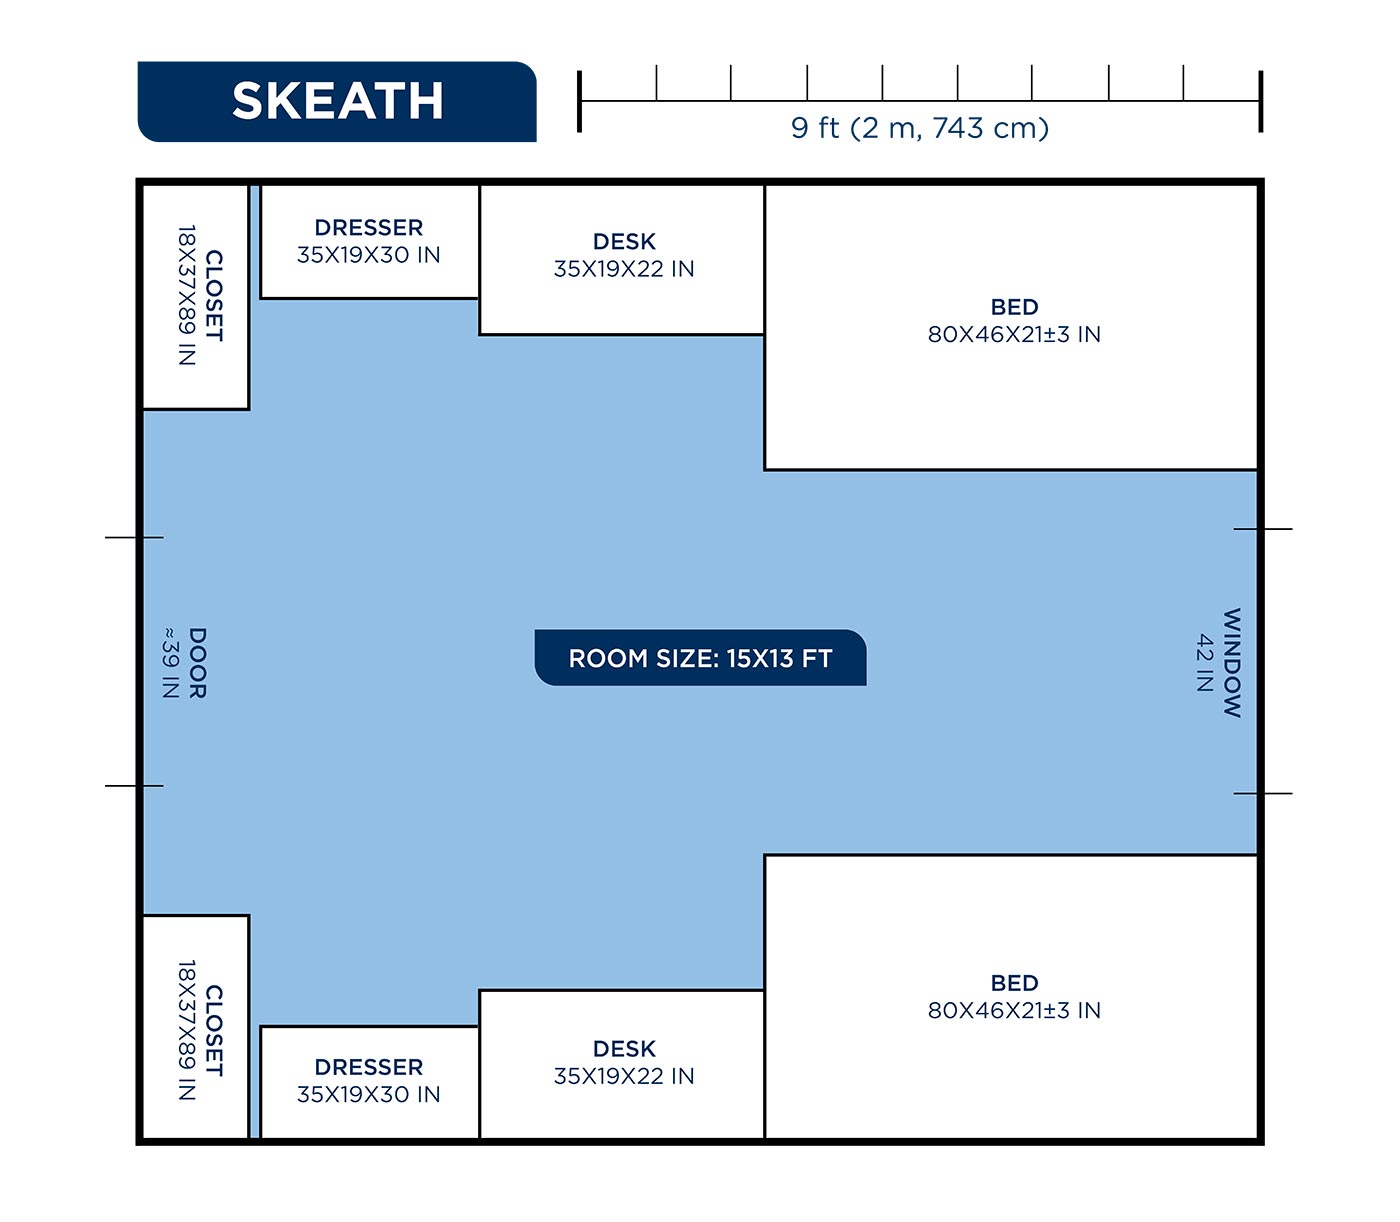 Skeath room layout